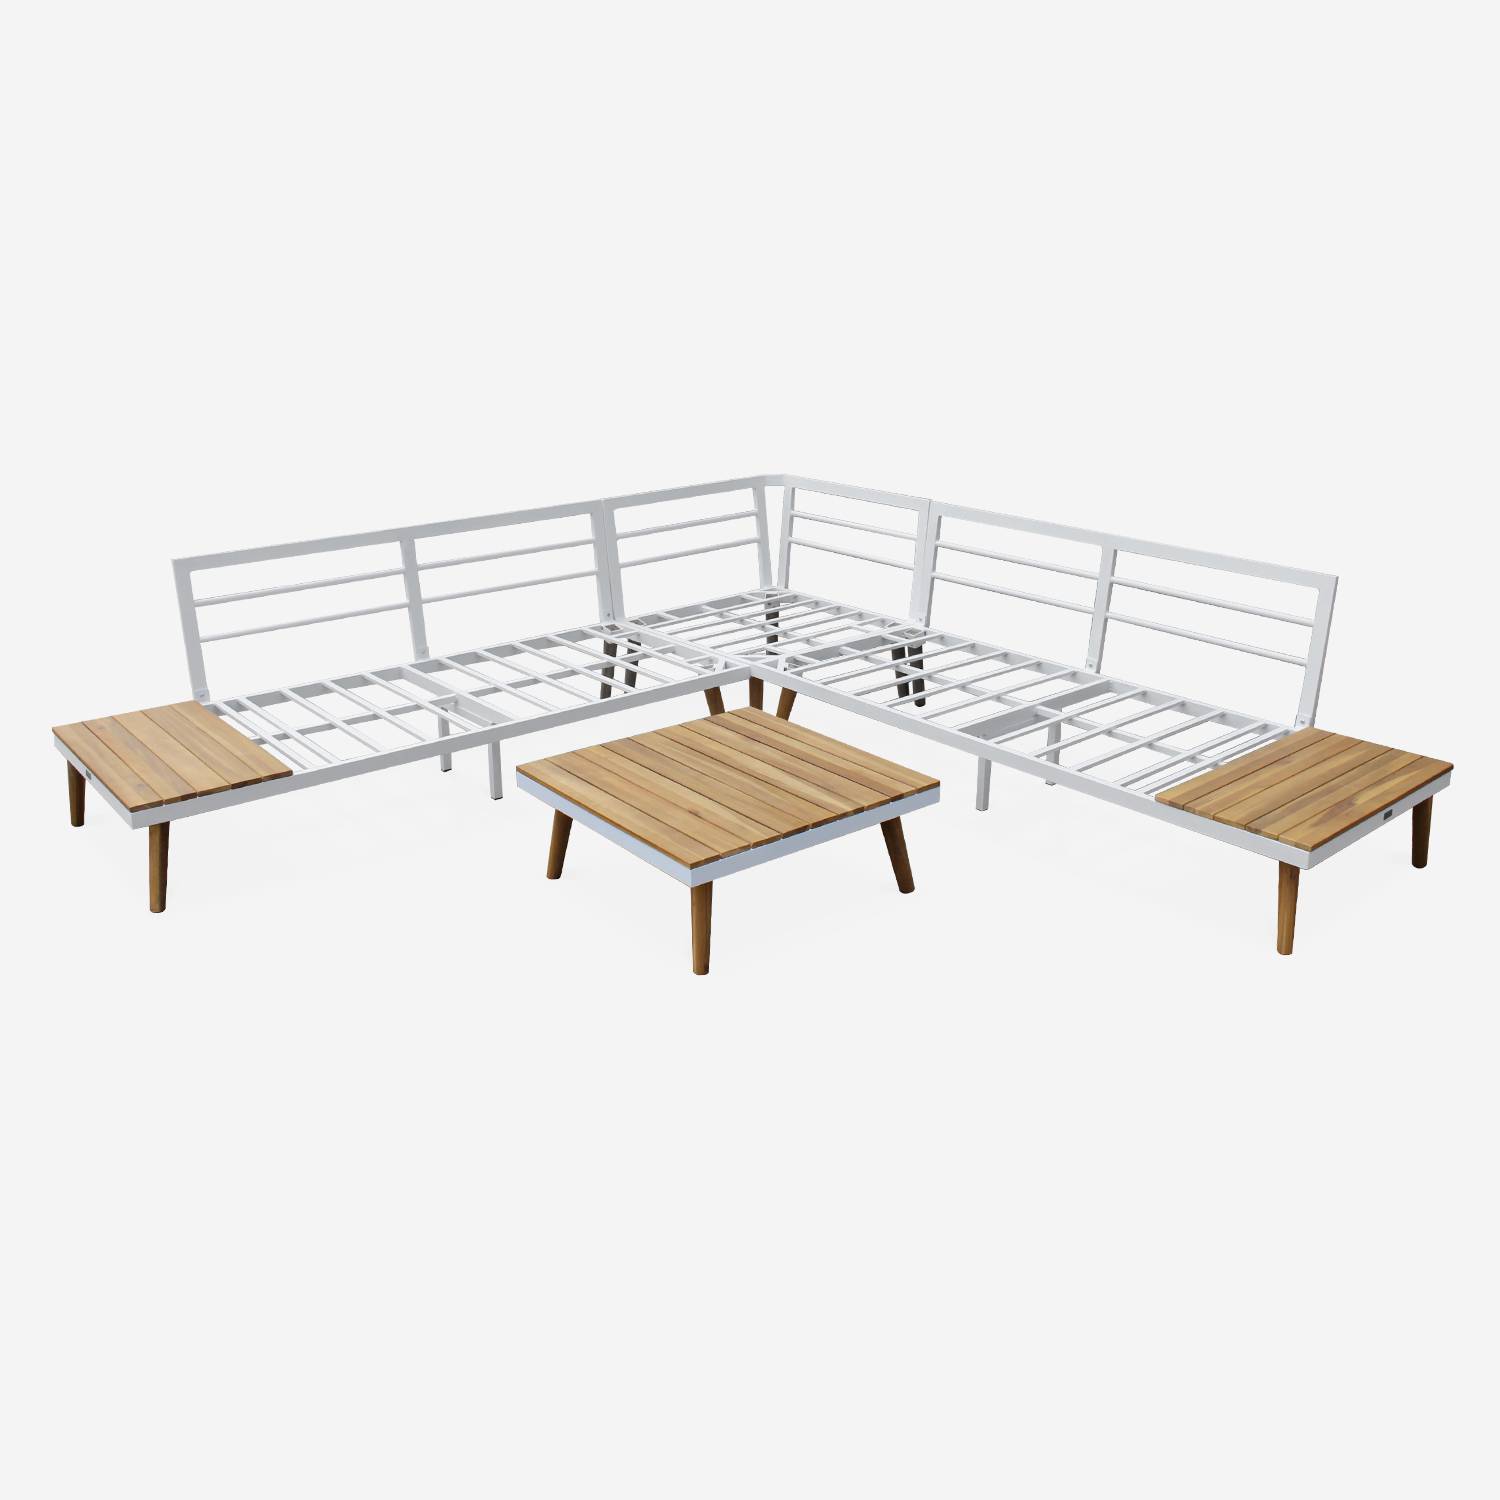 Conjunto de mobiliário de jardim em madeira de 5 lugares - Buenos Aires - Moldura branca/Almofadas cinzentas - Sofá de canto em acácia, mesas de apoio e mesa de centro, moldura em alumínio Photo6